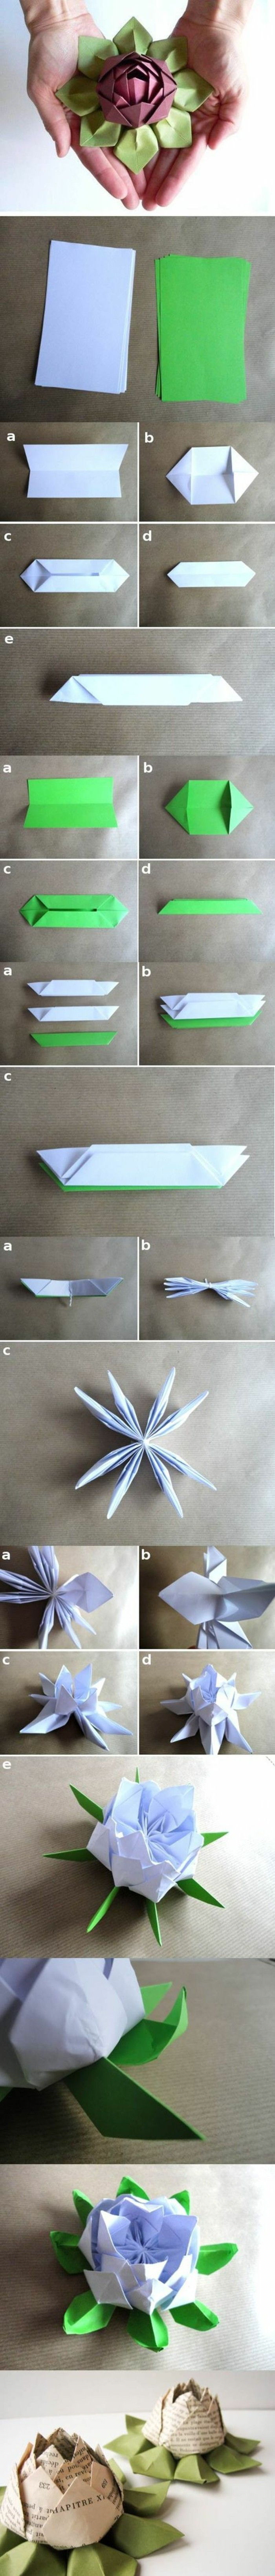 origami roos origami-flower vouwtraditie-paper-origami vouwen instructie